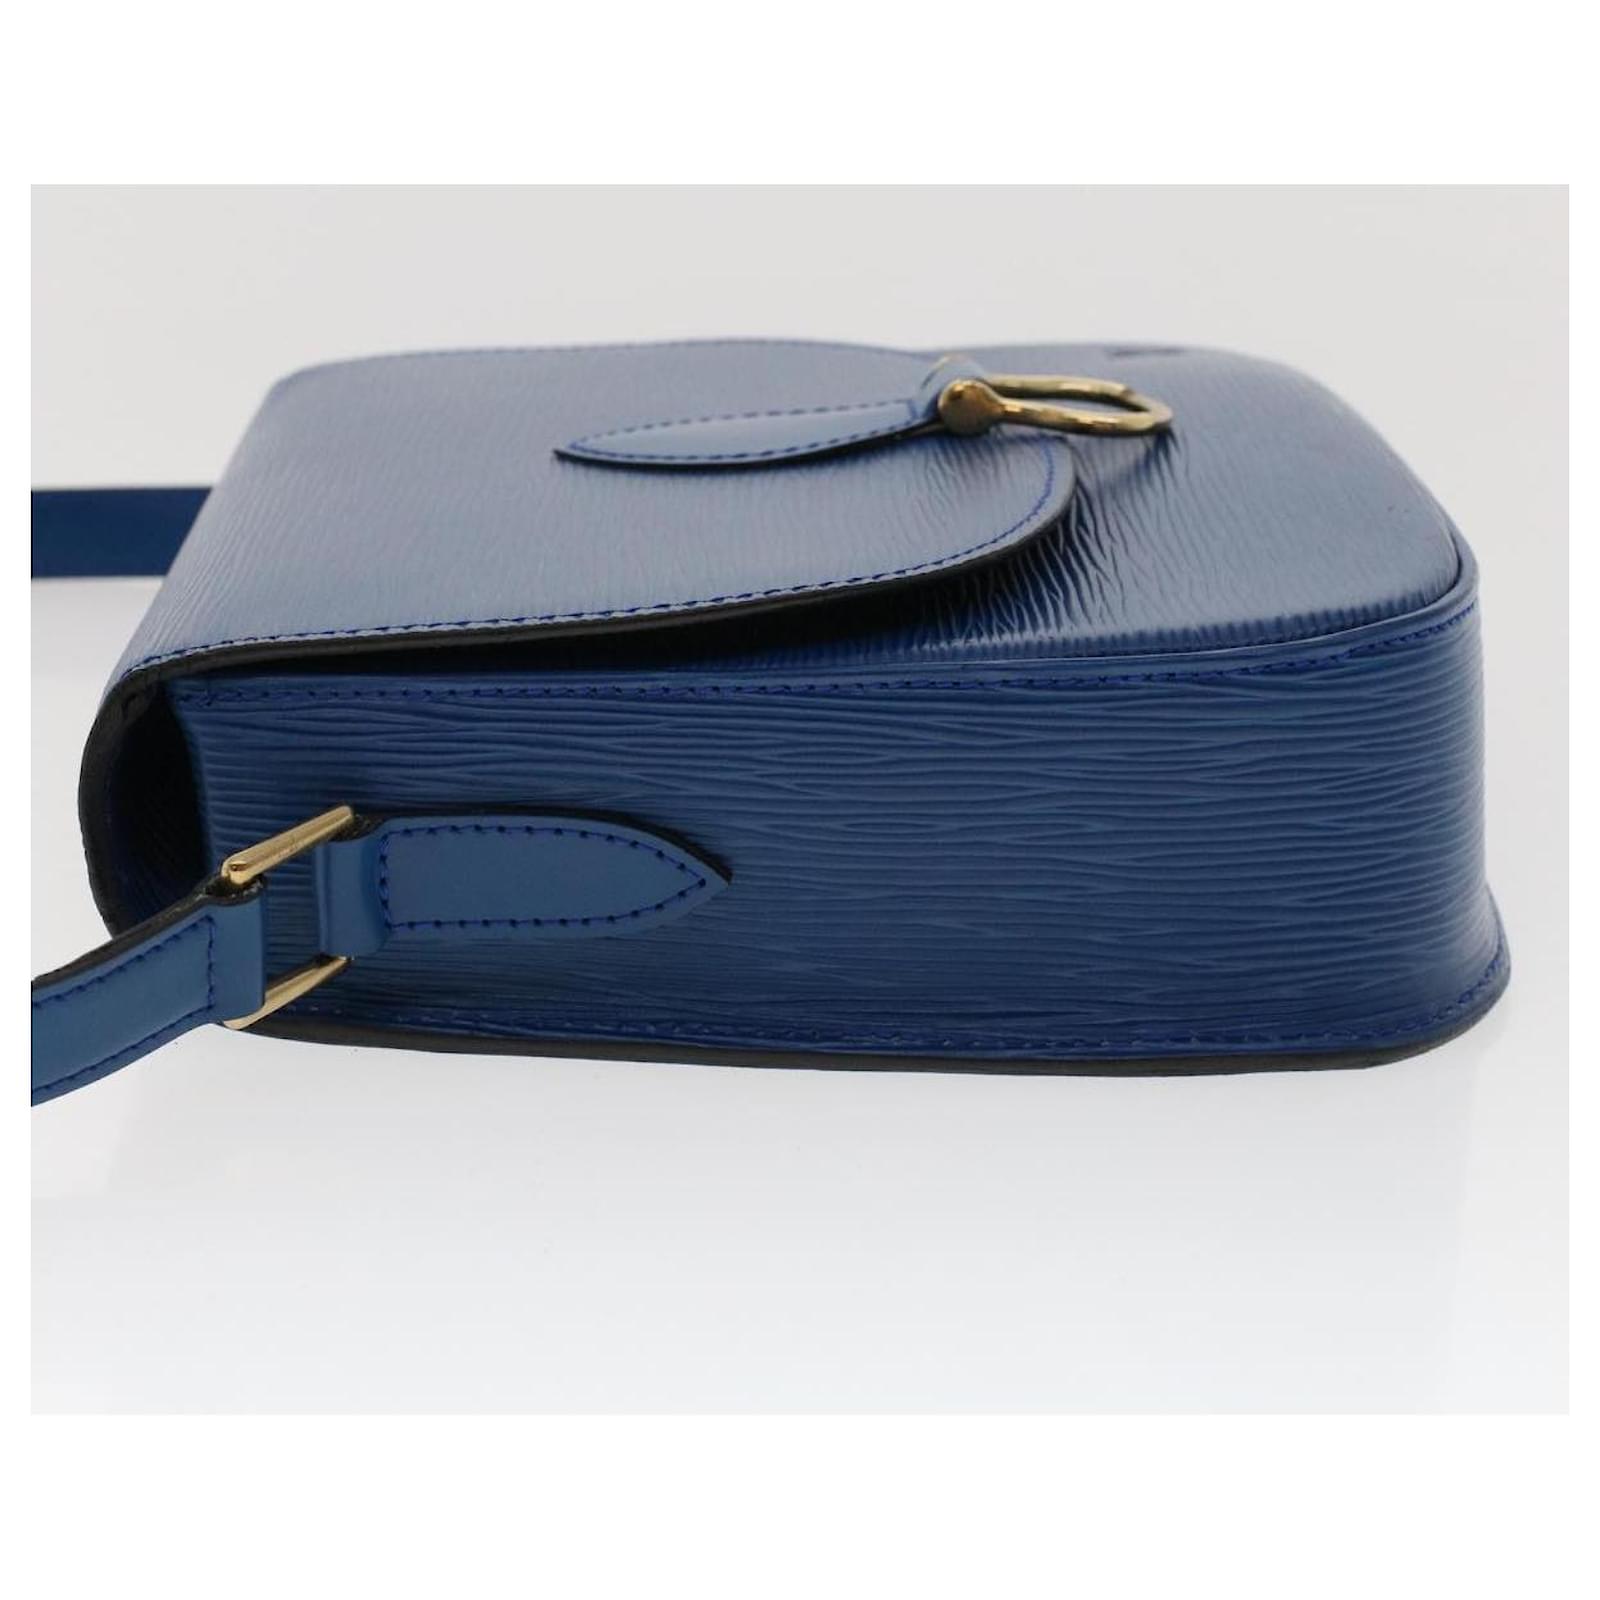 Louis Vuitton Epi Saint Cloud Crossbody Bag Toledo Blue M52195